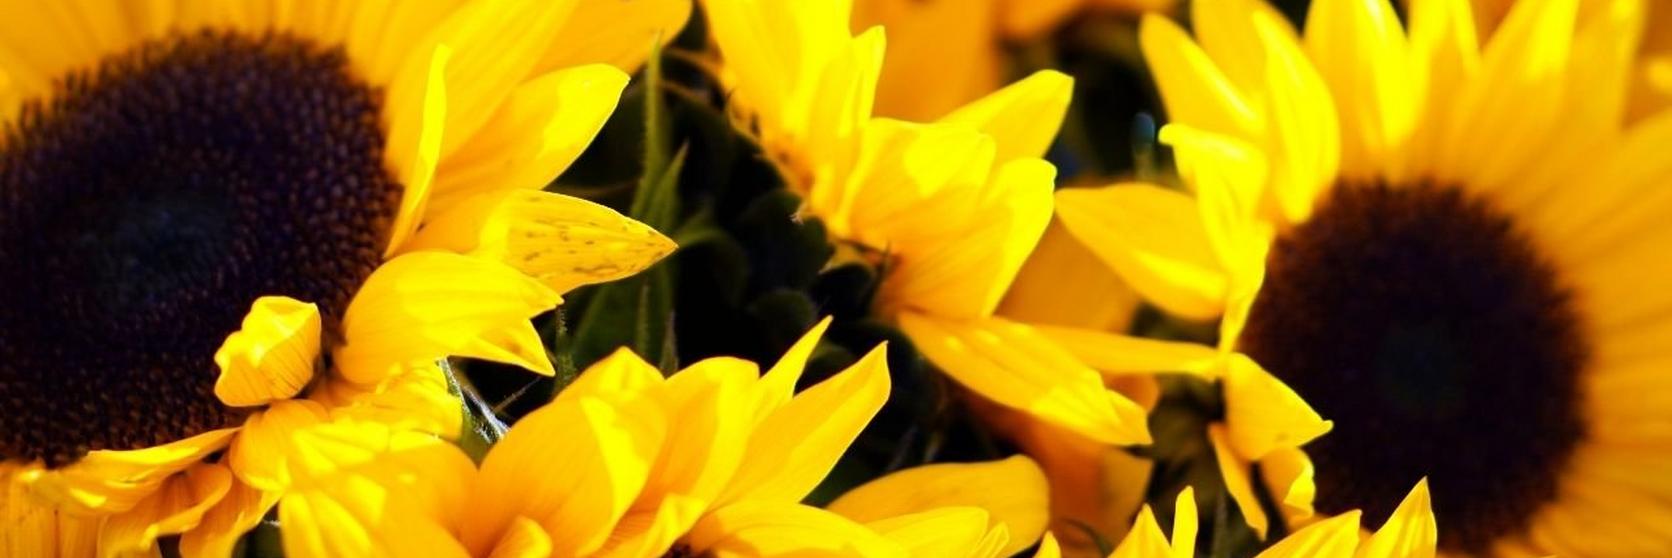 fresh-yellow-sunflowers-close-up